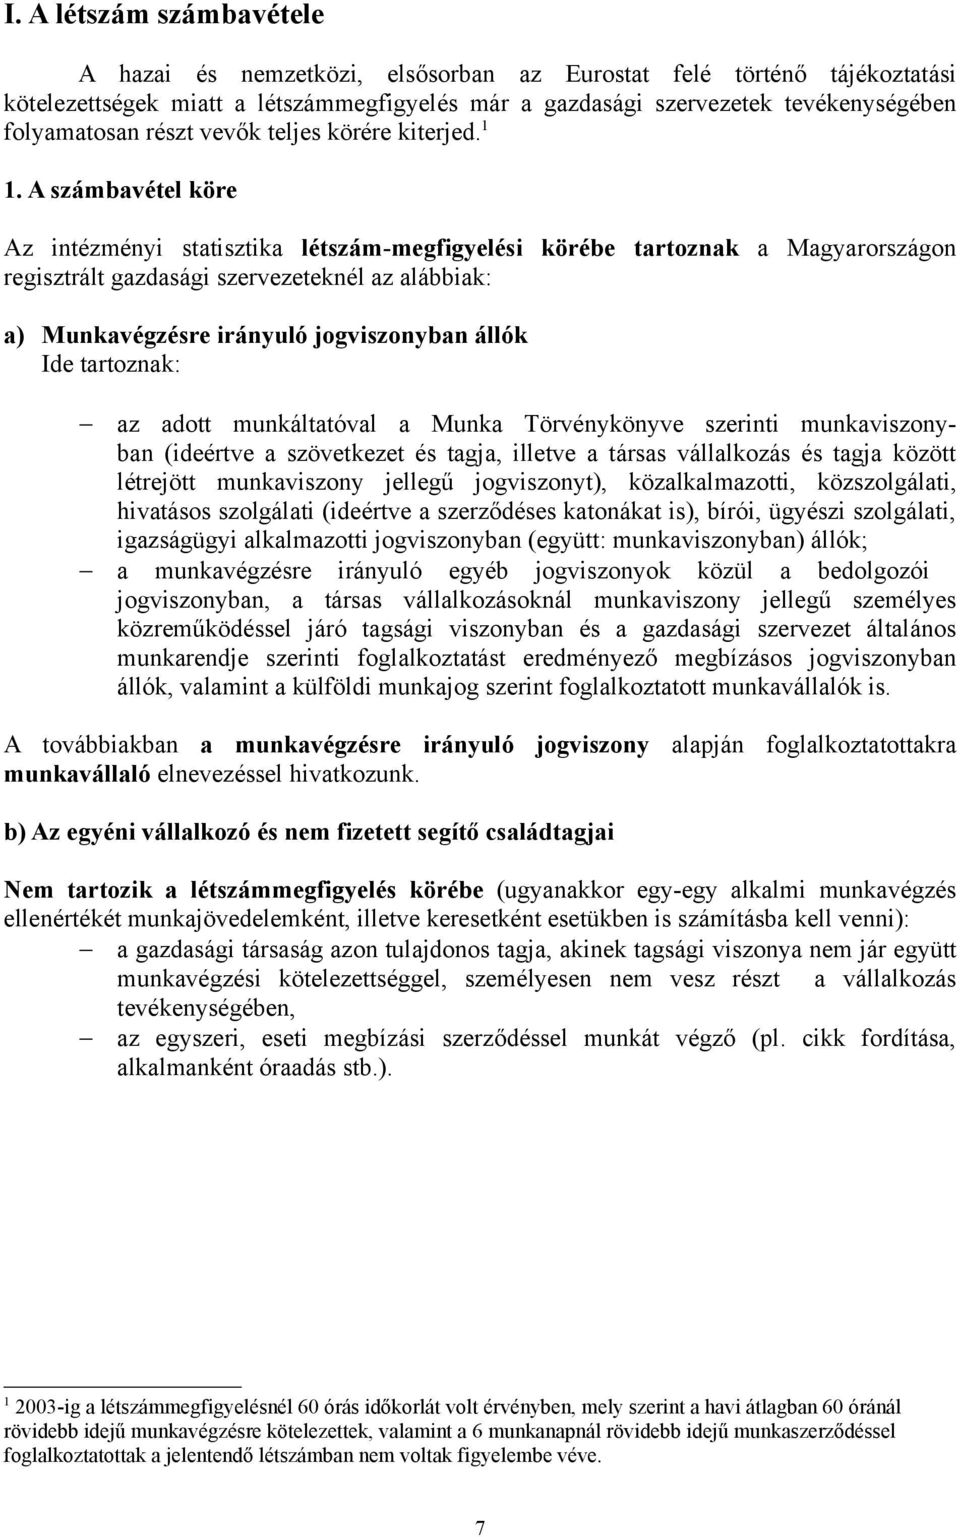 A számbavétel köre Az intézményi statisztika létszám-megfigyelési körébe tartoznak a Magyarországon regisztrált gazdasági szervezeteknél az alábbiak: a) Munkavégzésre irányuló jogviszonyban állók Ide